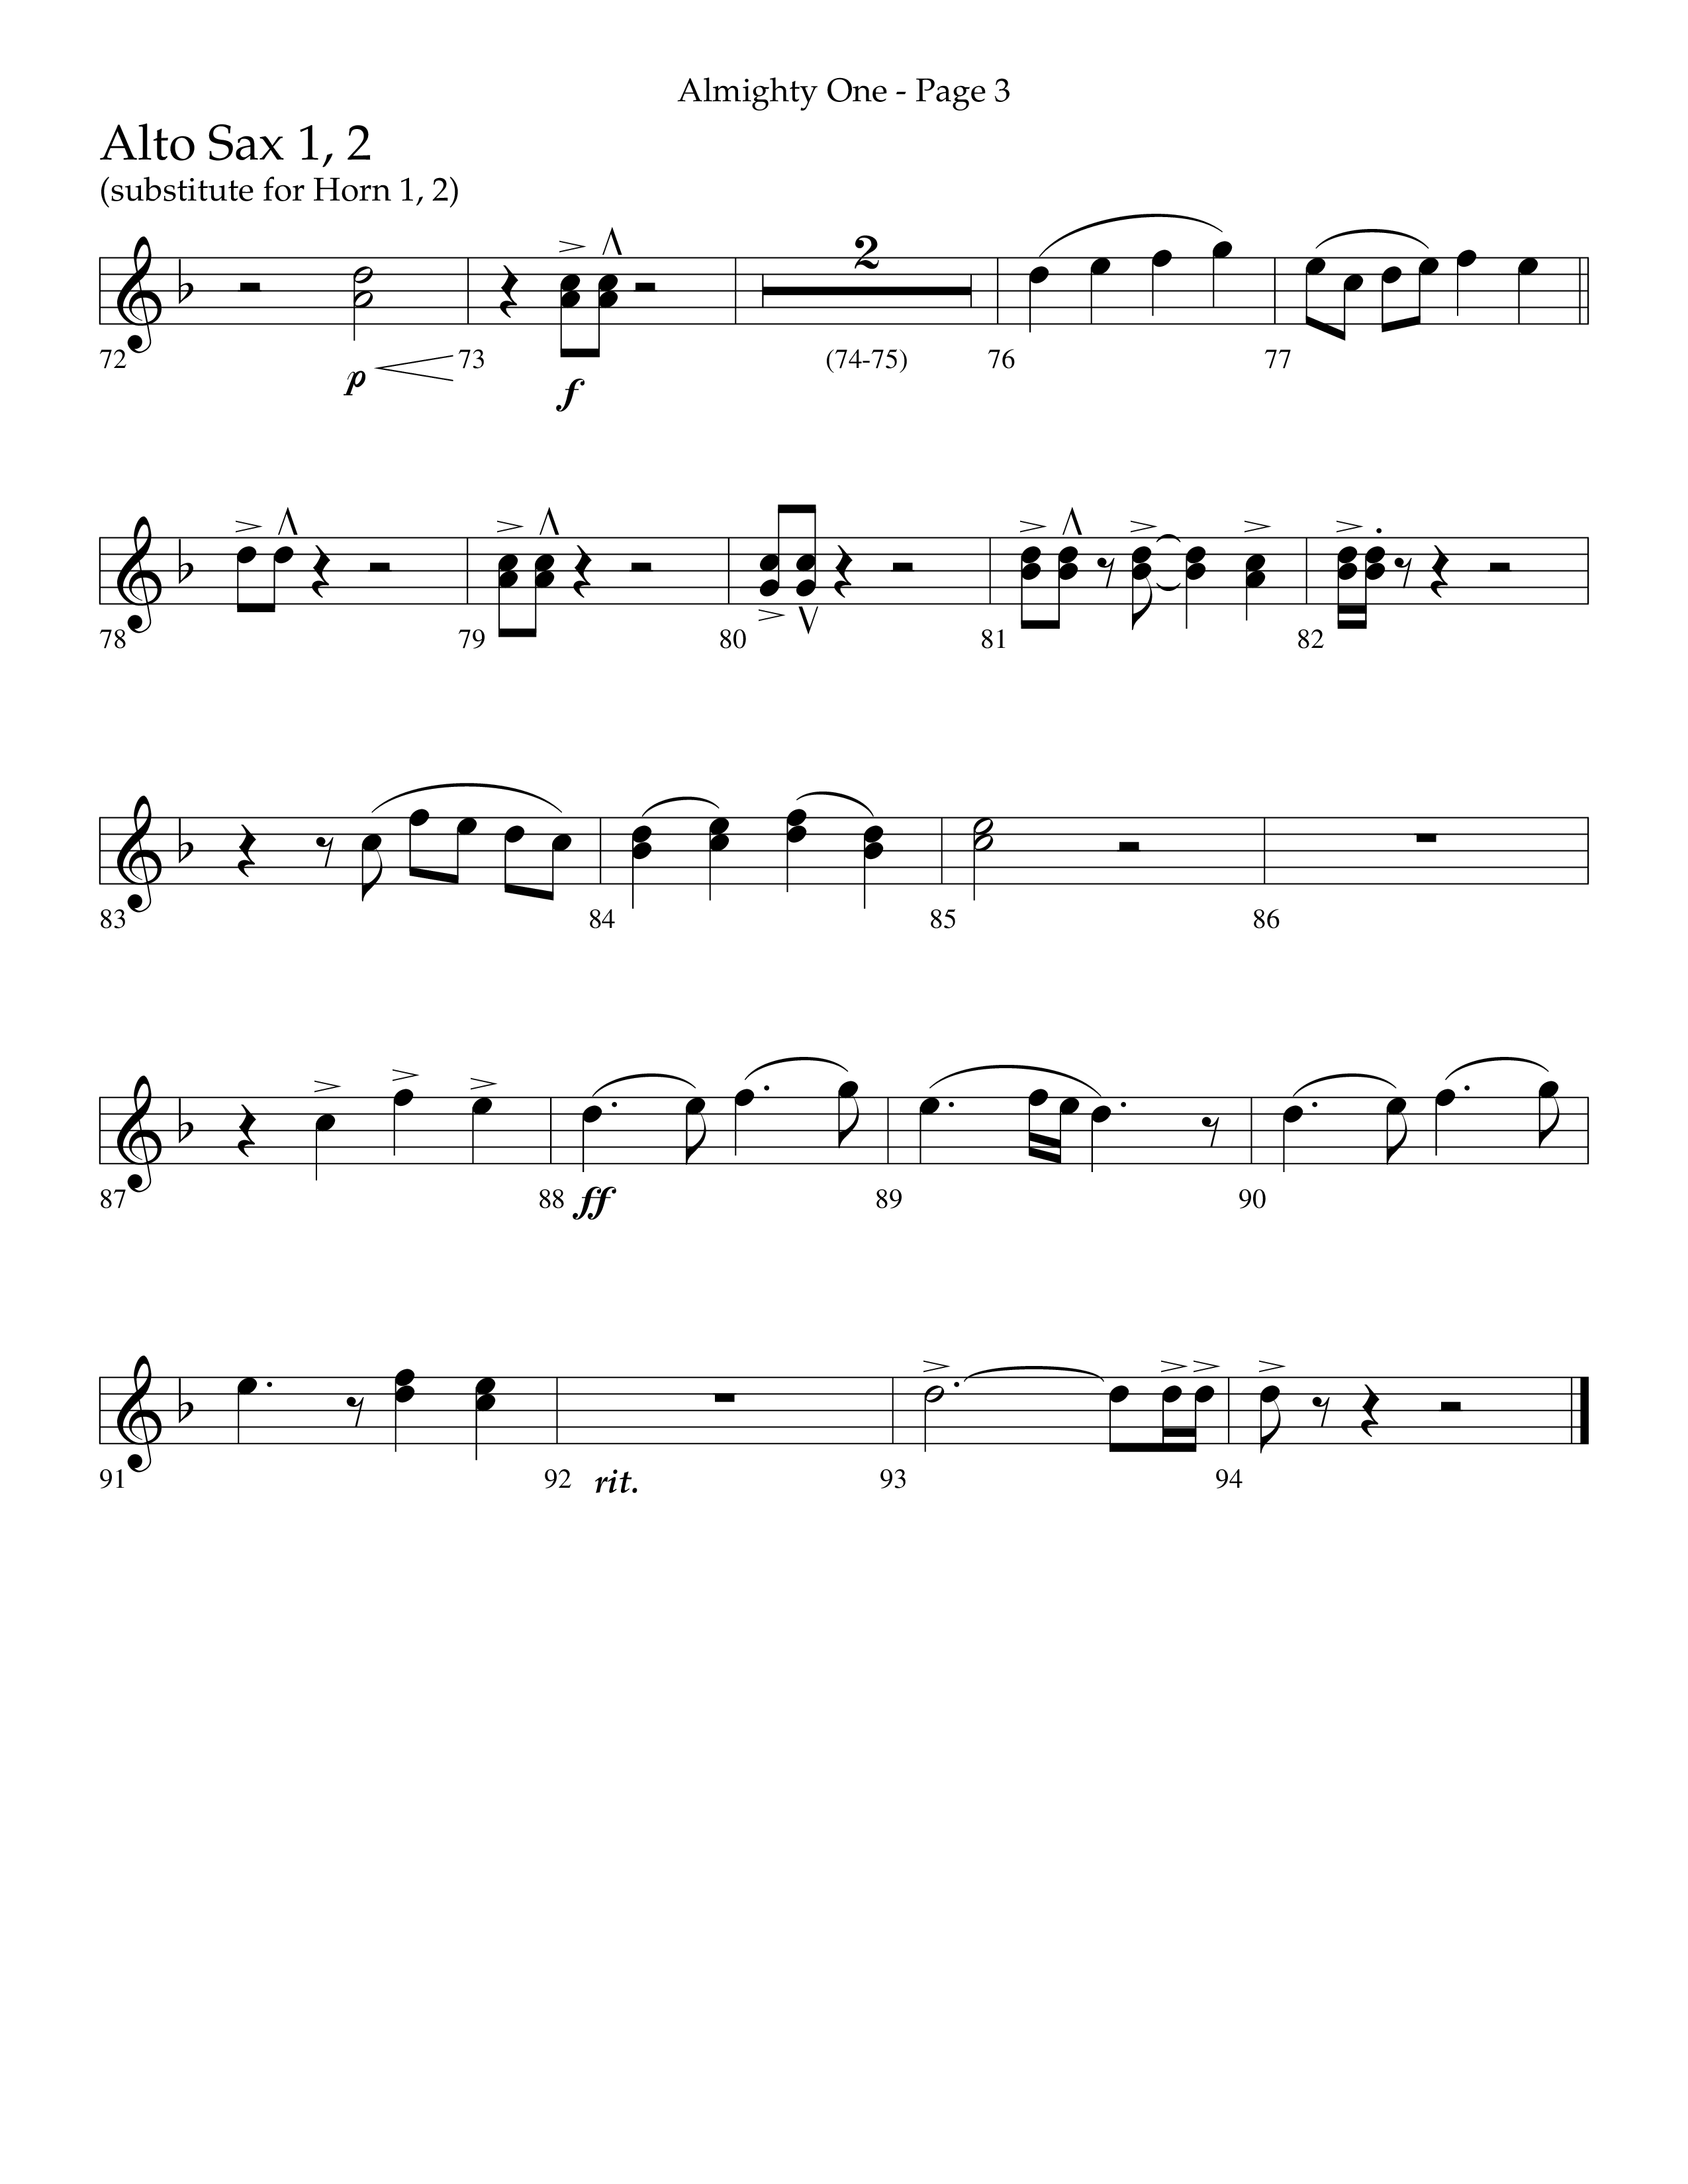 Almighty One (Choral Anthem SATB) Alto Sax 1/2 (Lifeway Choral / Arr. Bradley Knight)